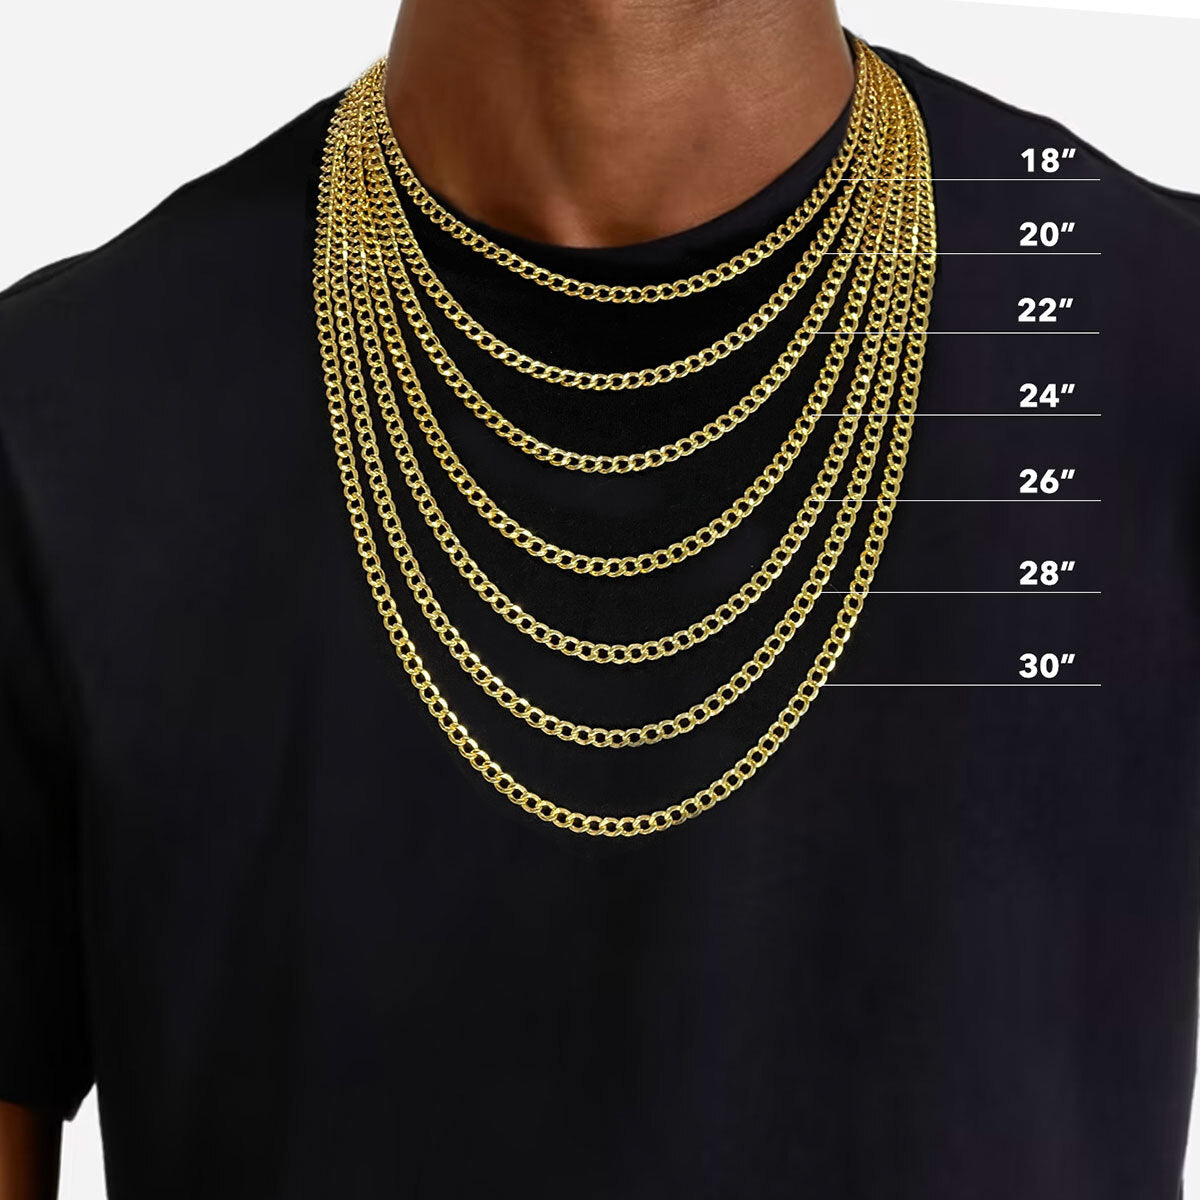 1" Diamond Cut Lion Pendant & Chain Necklace Set 10K Yellow Gold